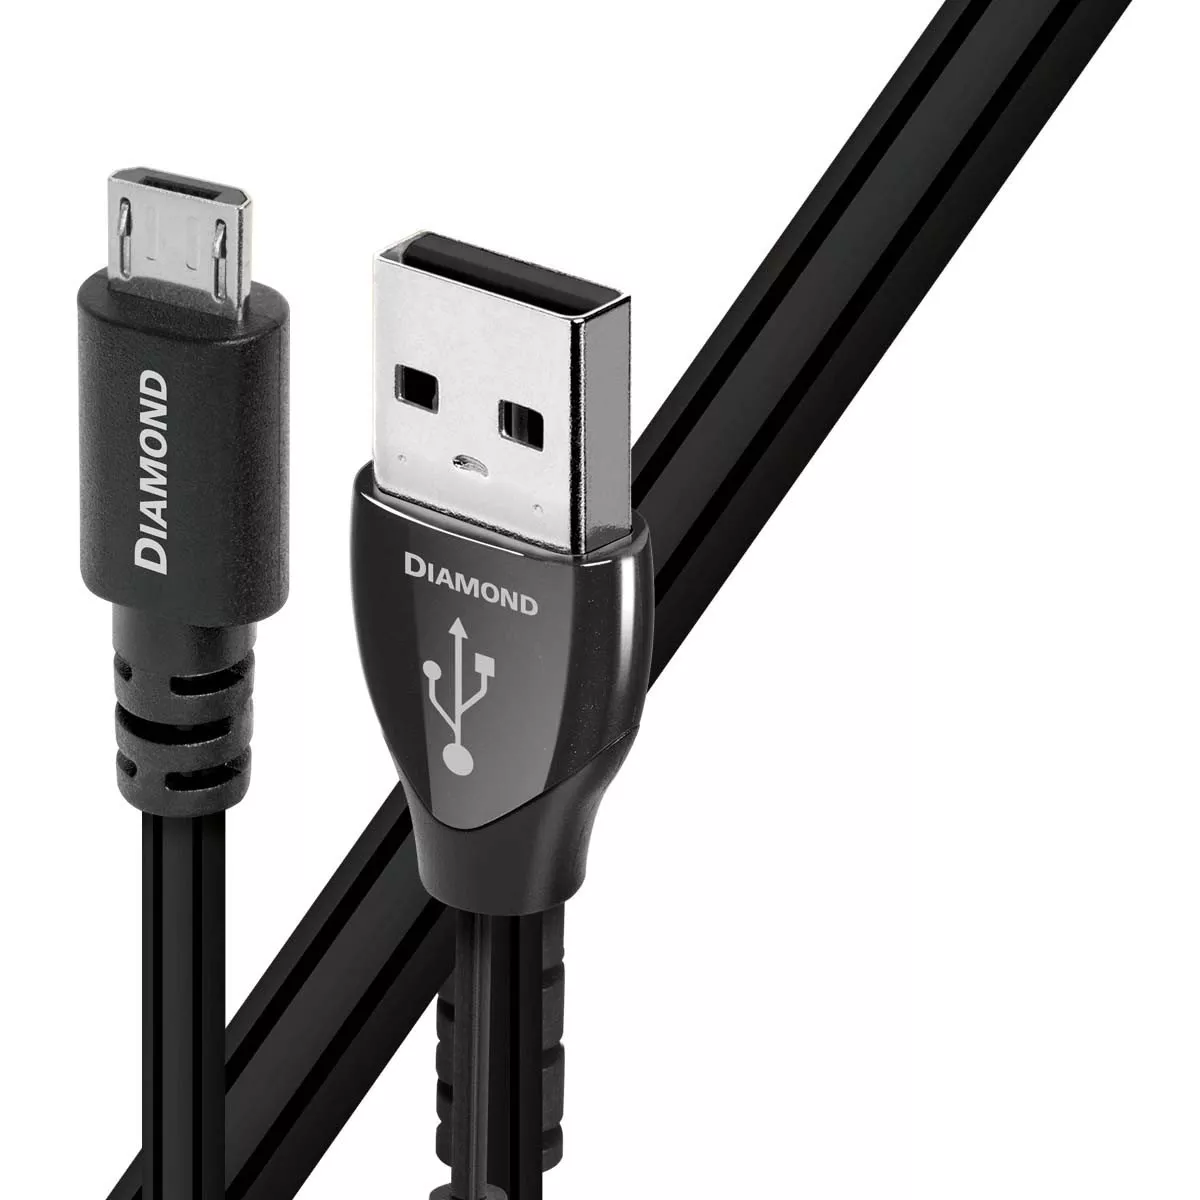 Cablu USB A - USB Micro AudioQuest Diamond 0.75 m, [],audioclub.ro